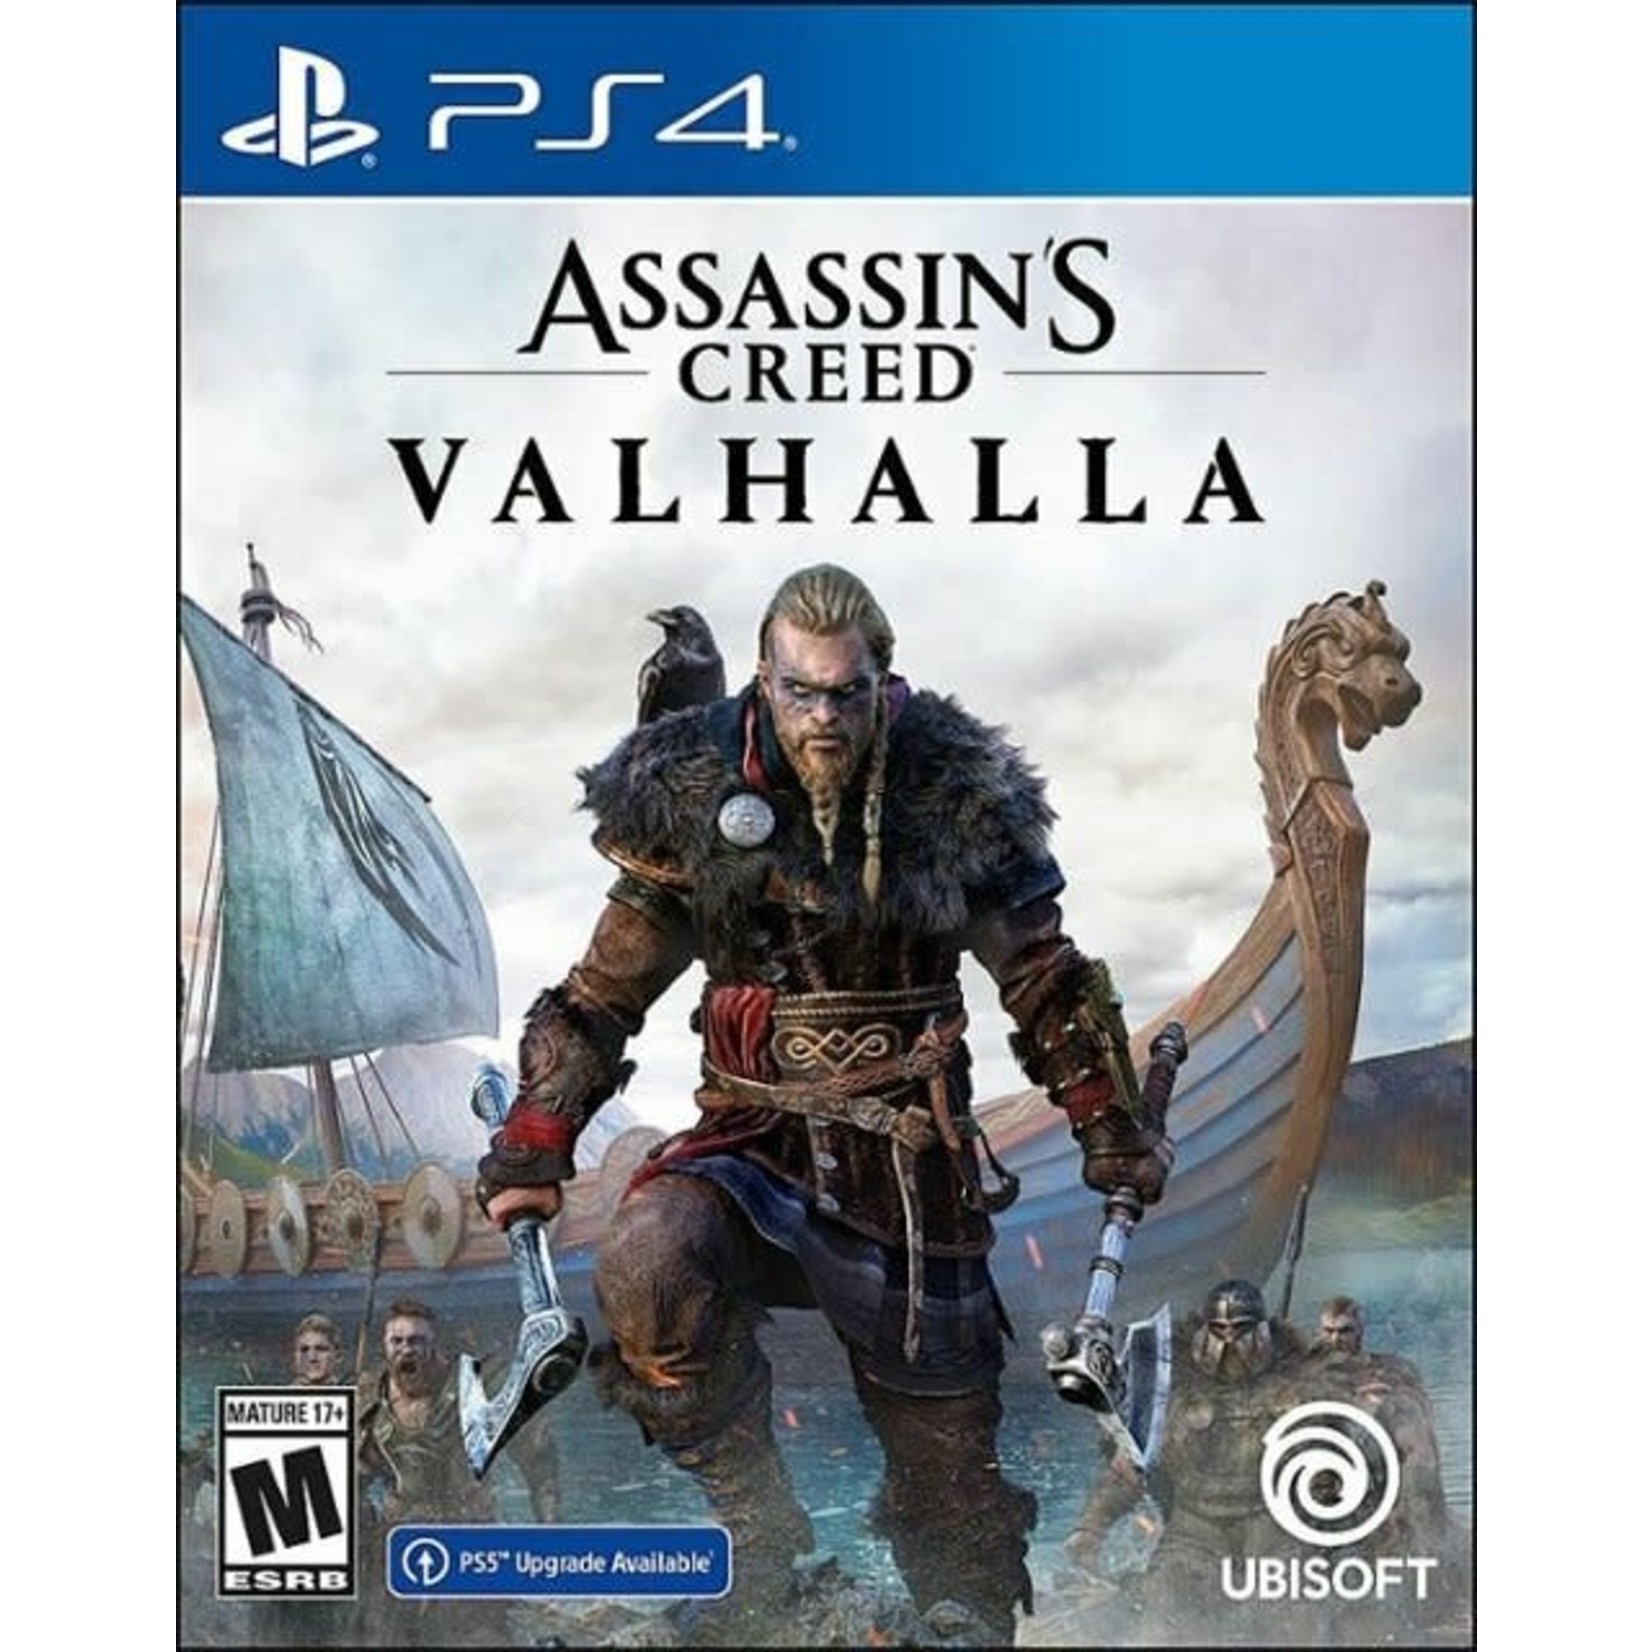 PS4U-Assassin's Creed Valhalla